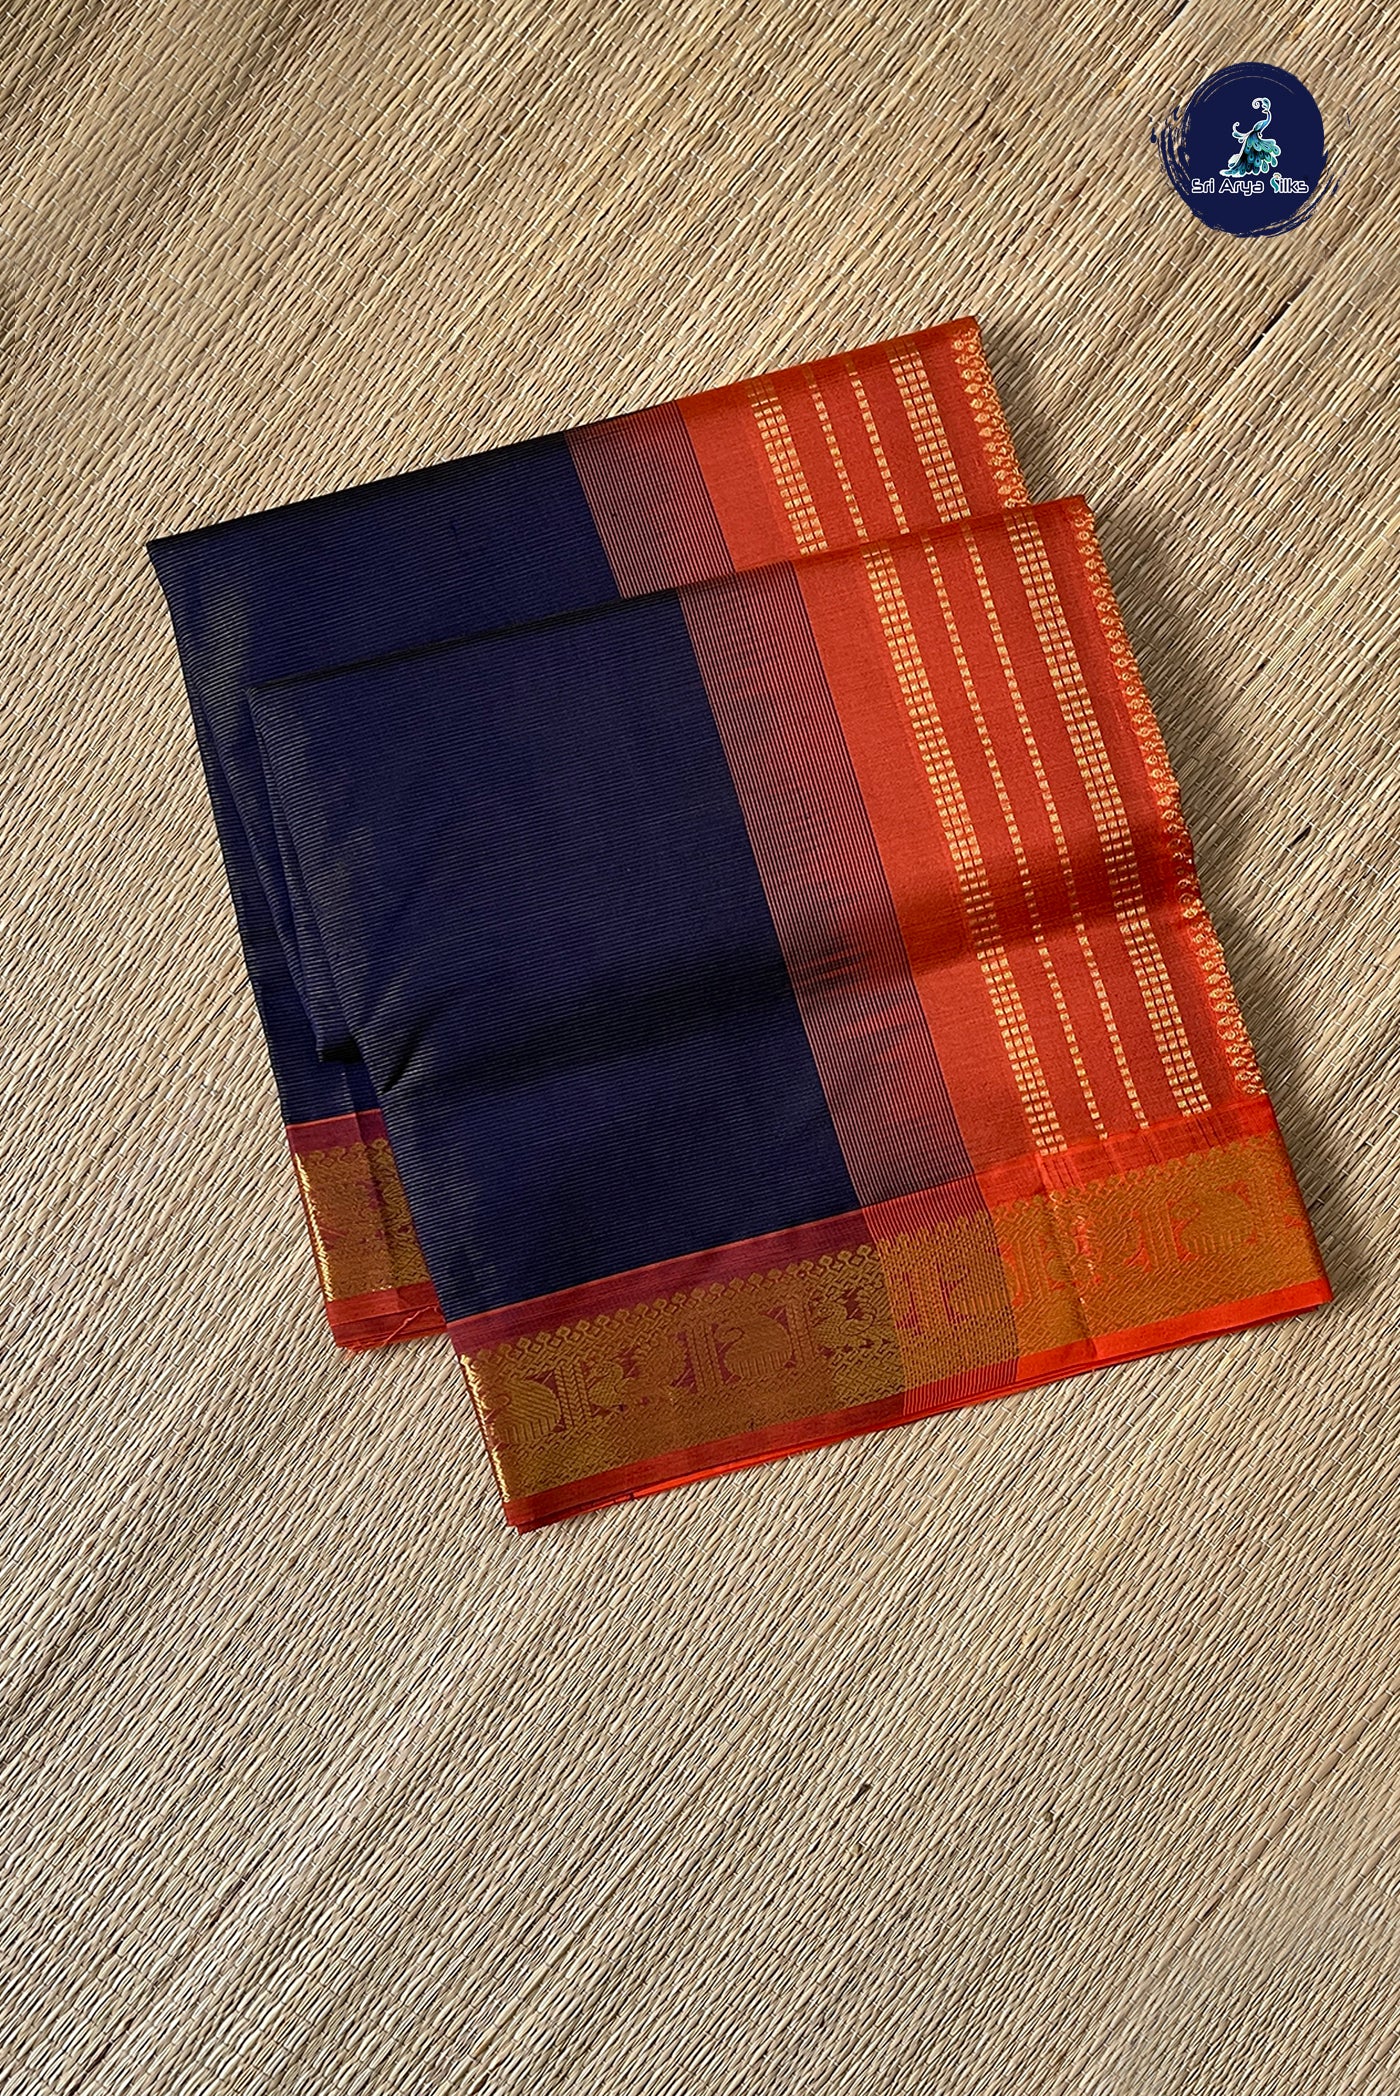 Navy Blue Vaira Oosi Silk Cotton Saree With Vaira Oosi Pattern